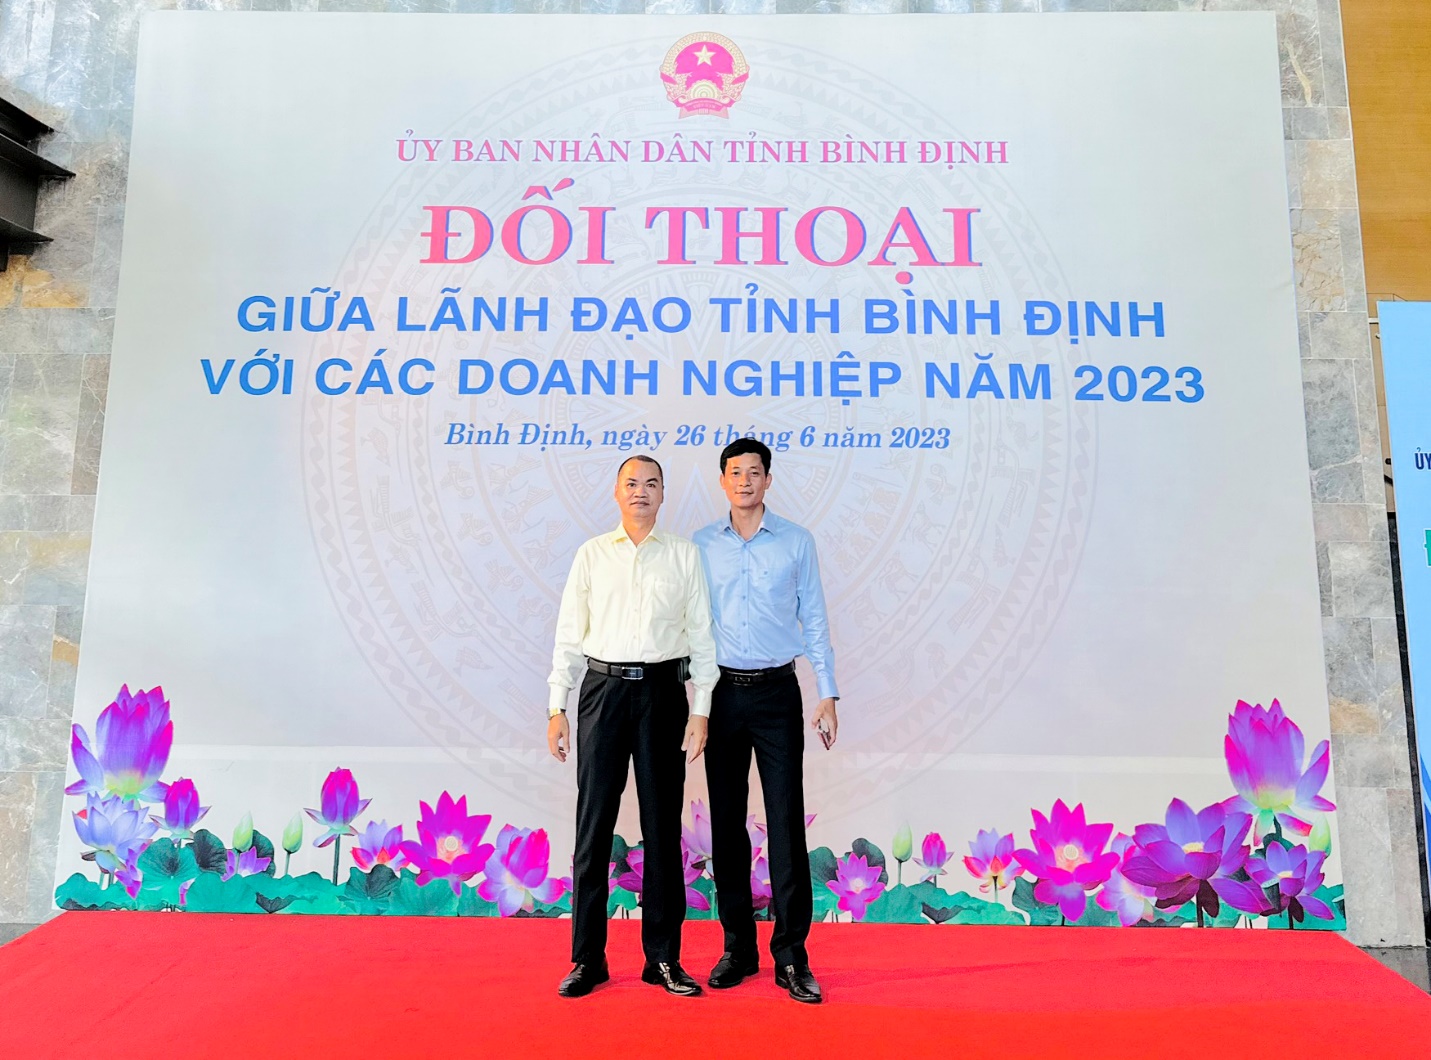 Ông Nguyễn Văn Học, Chủ tịch Hiệp hội Doanh nghiệp tỉnh Bình Định và đại diện ngân hàng Đông Á